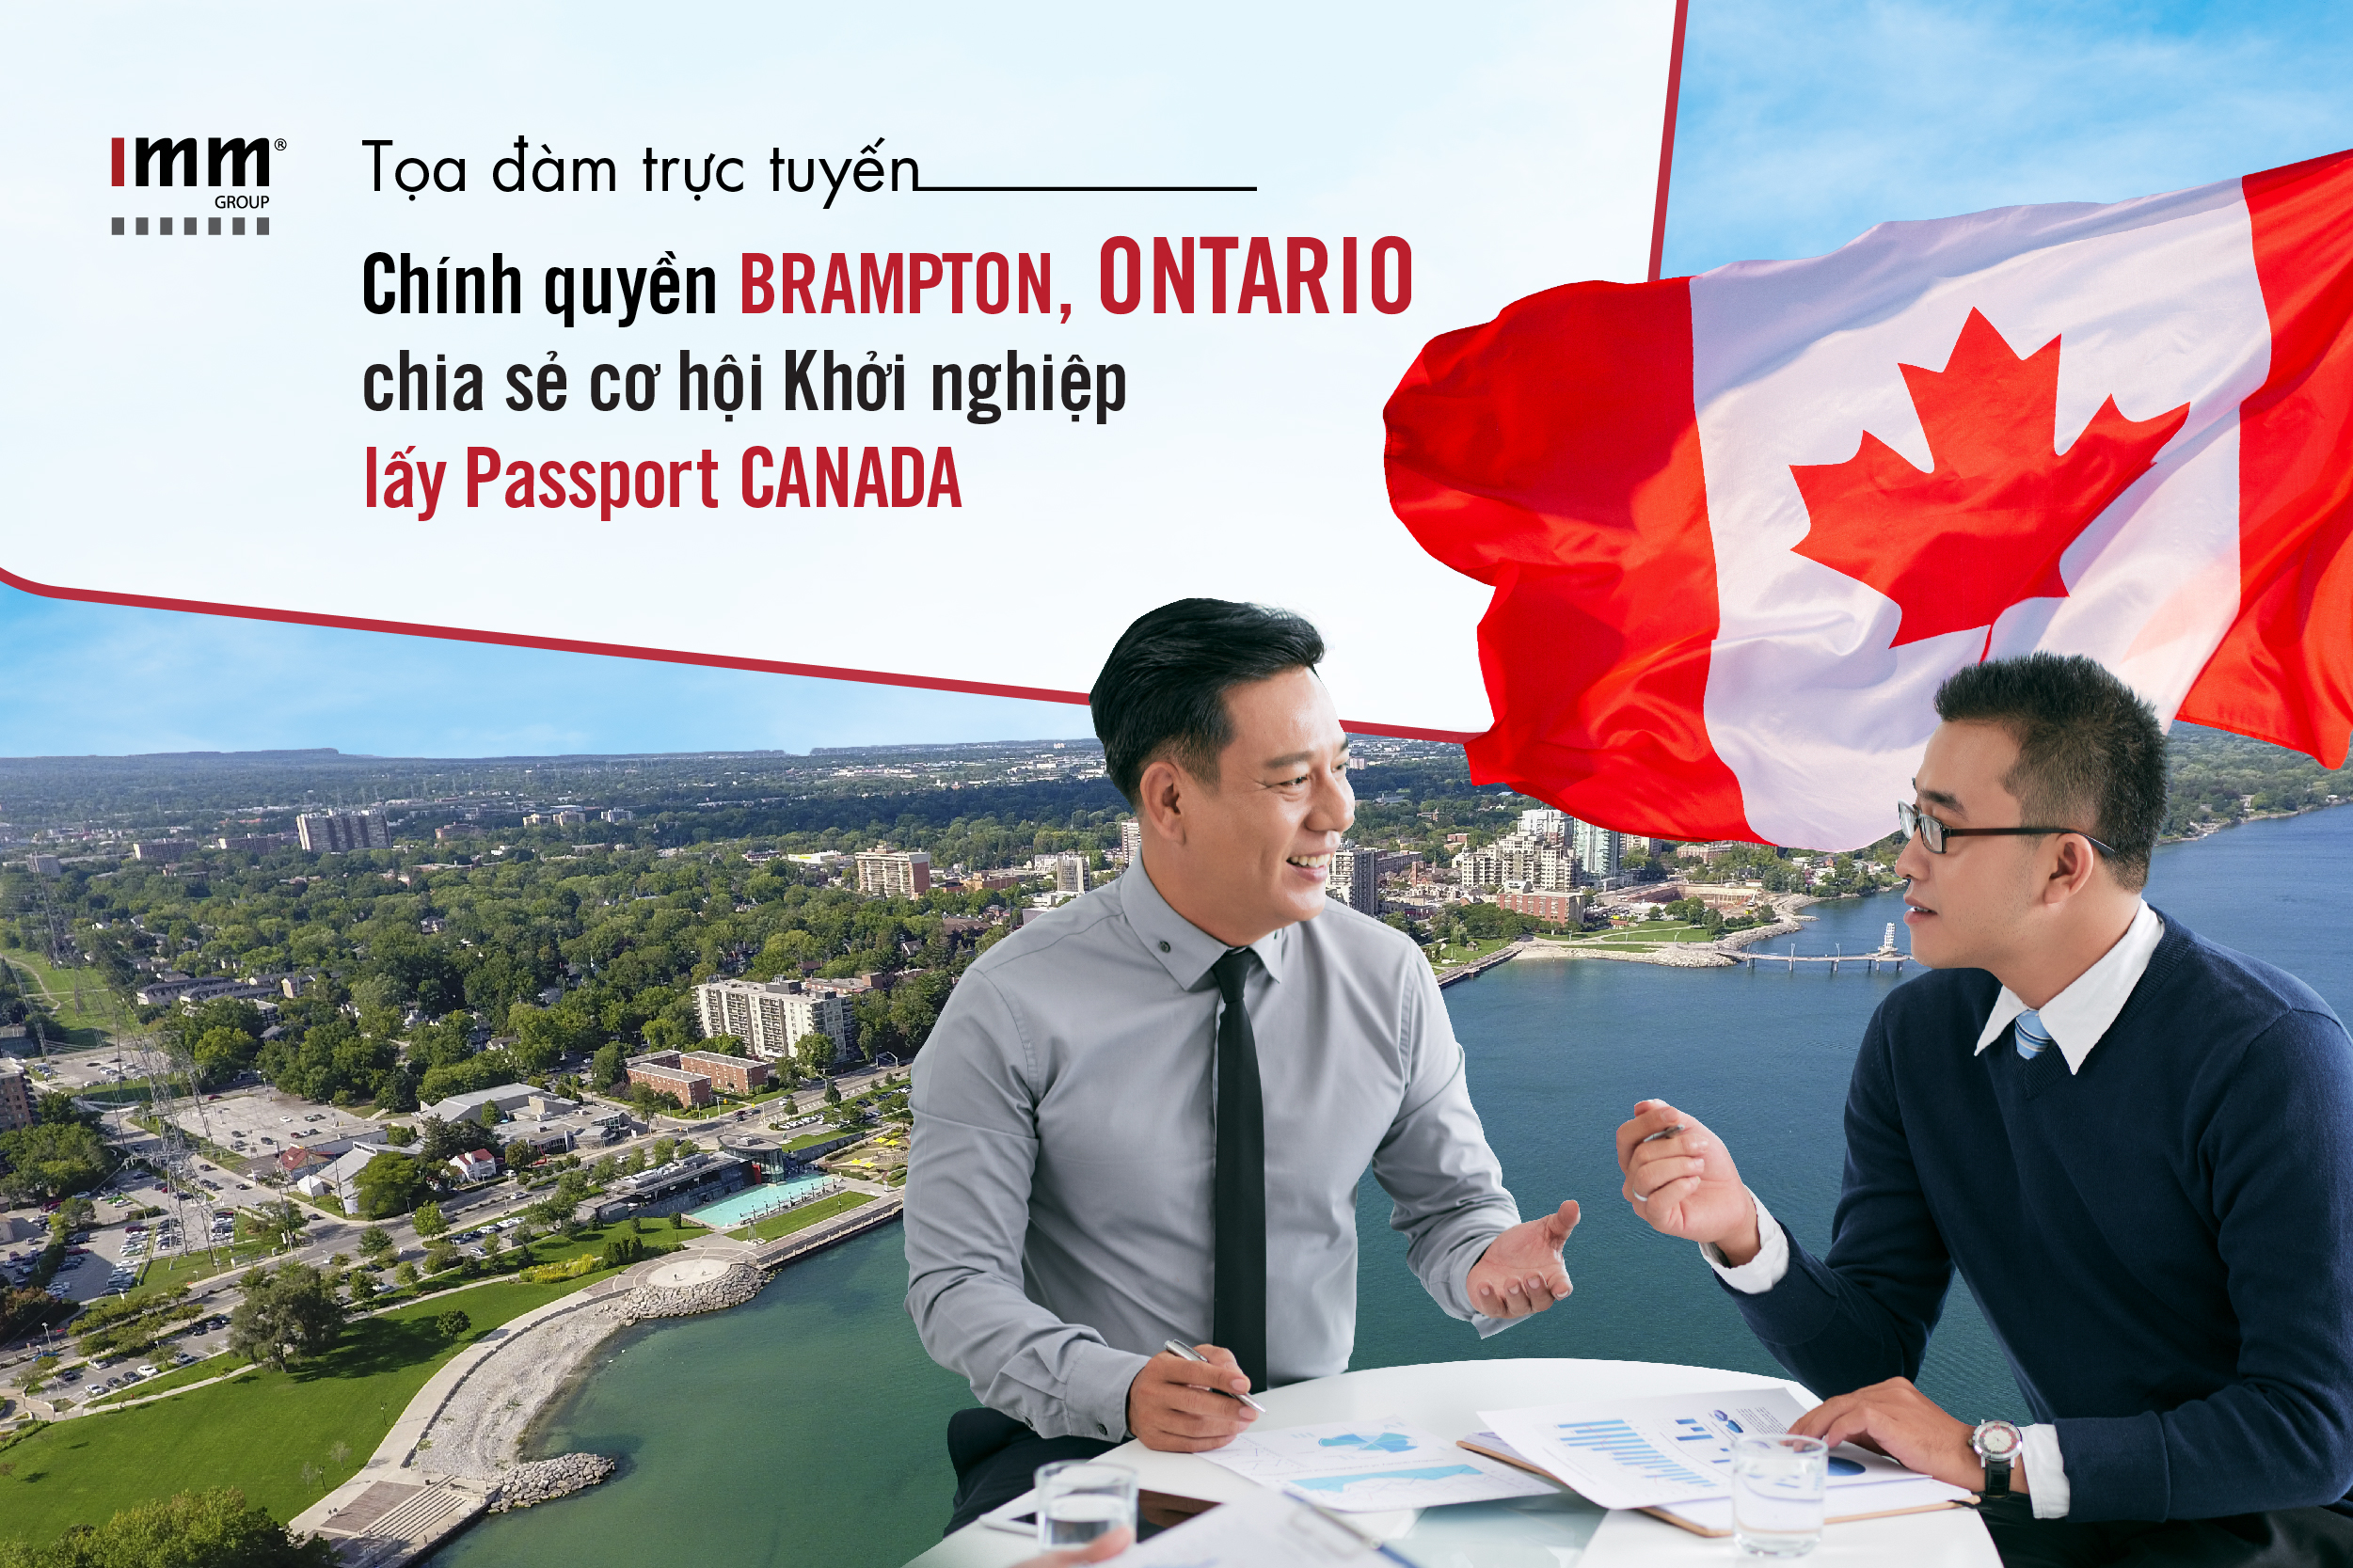 Chính quyền Brampton, Ontario chia sẻ cơ hội Khởi nghiệp  lấy Passport Canada